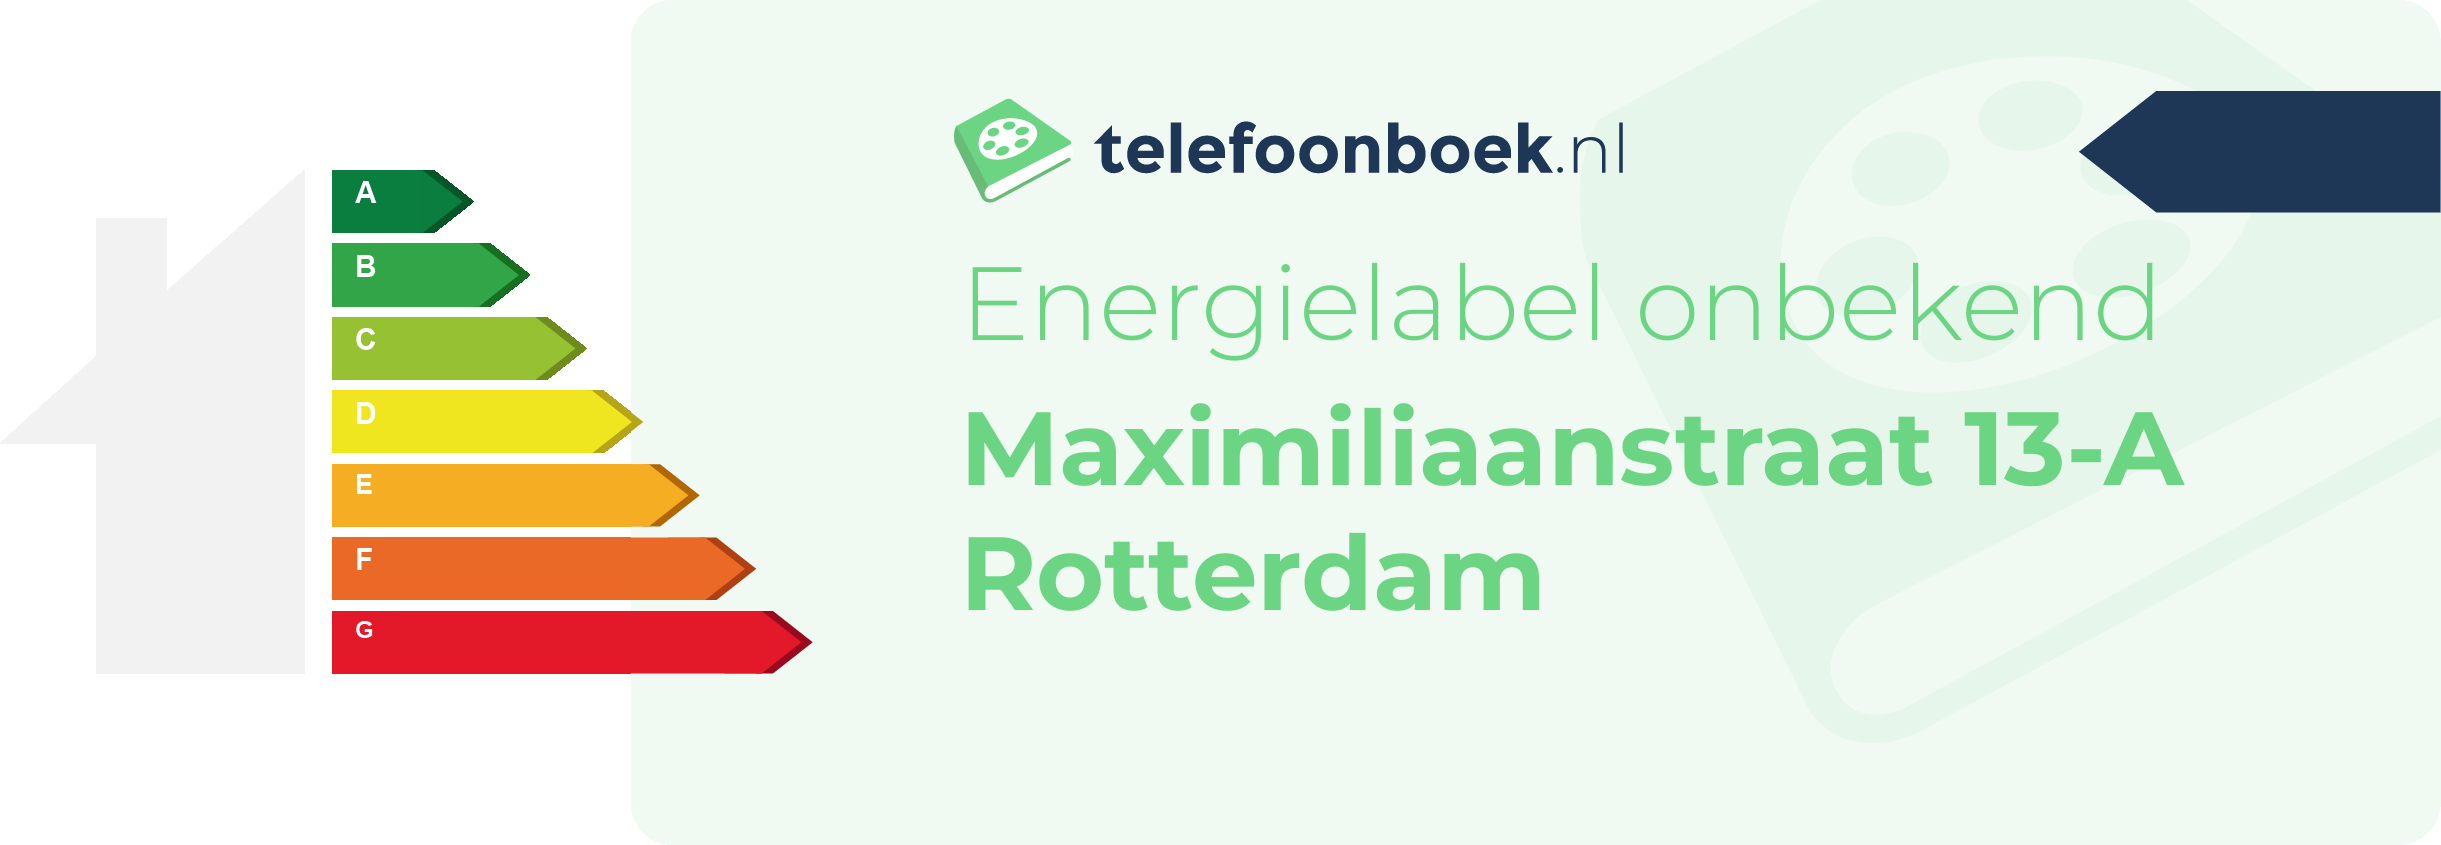 Energielabel Maximiliaanstraat 13-A Rotterdam